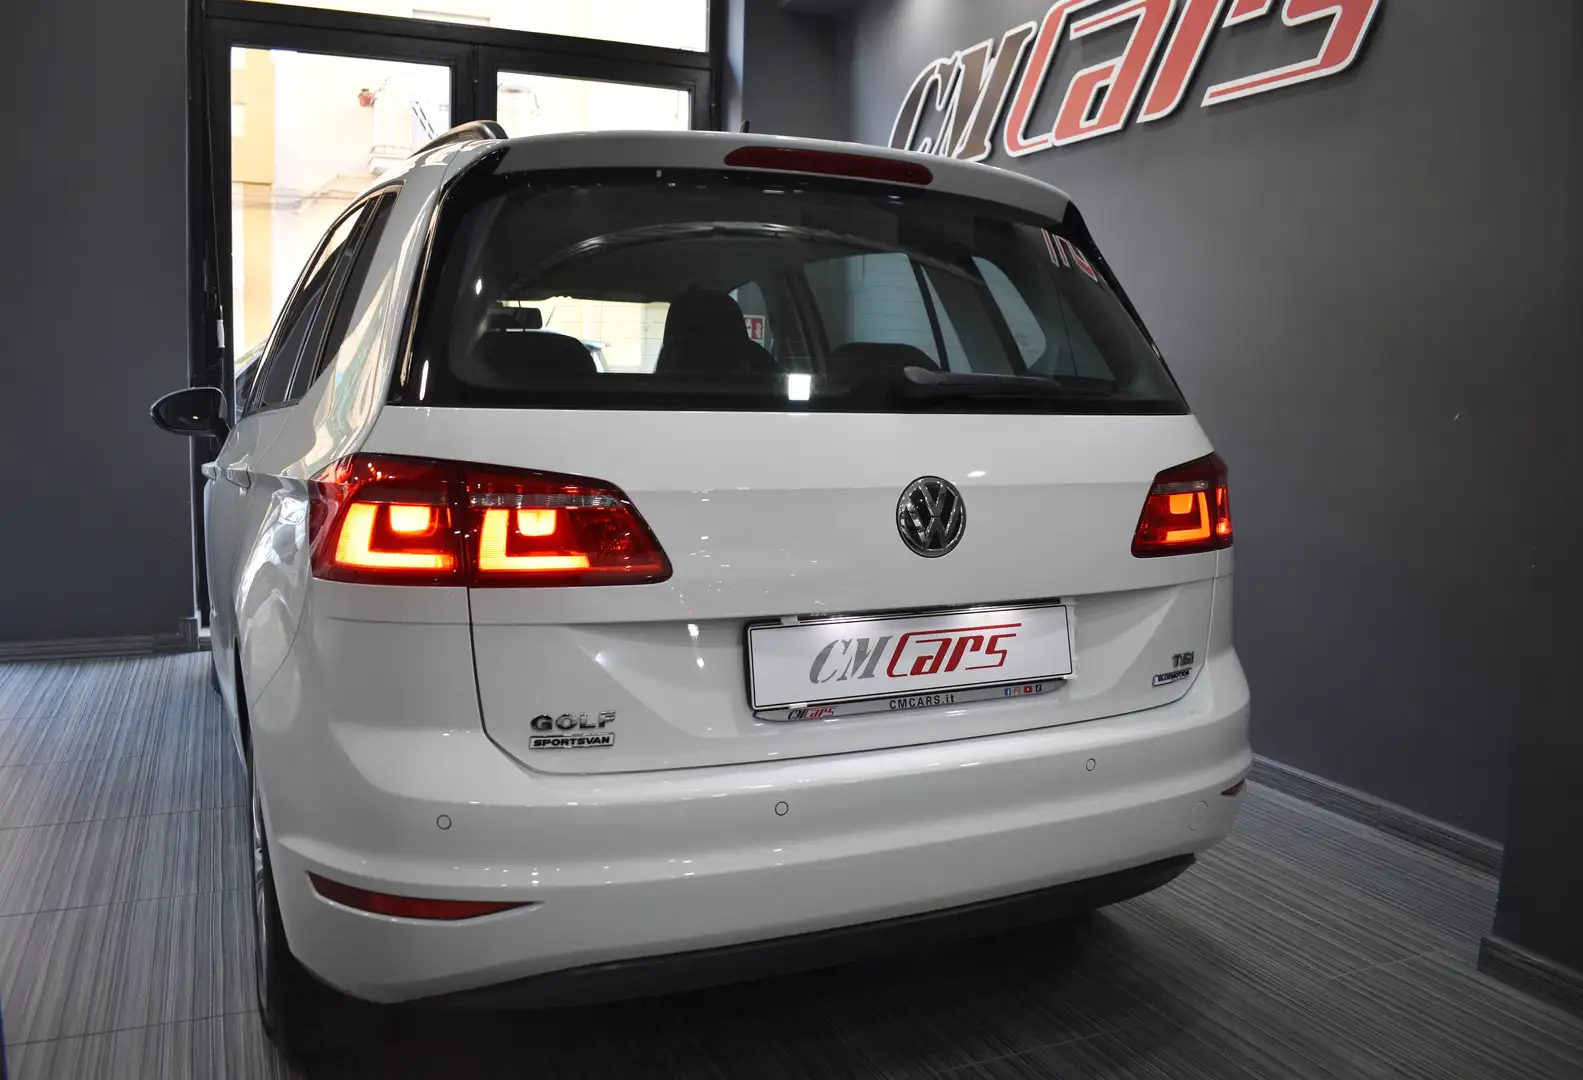 usato Volkswagen Golf Cabrio a Napoli – Na per € 13.900,-